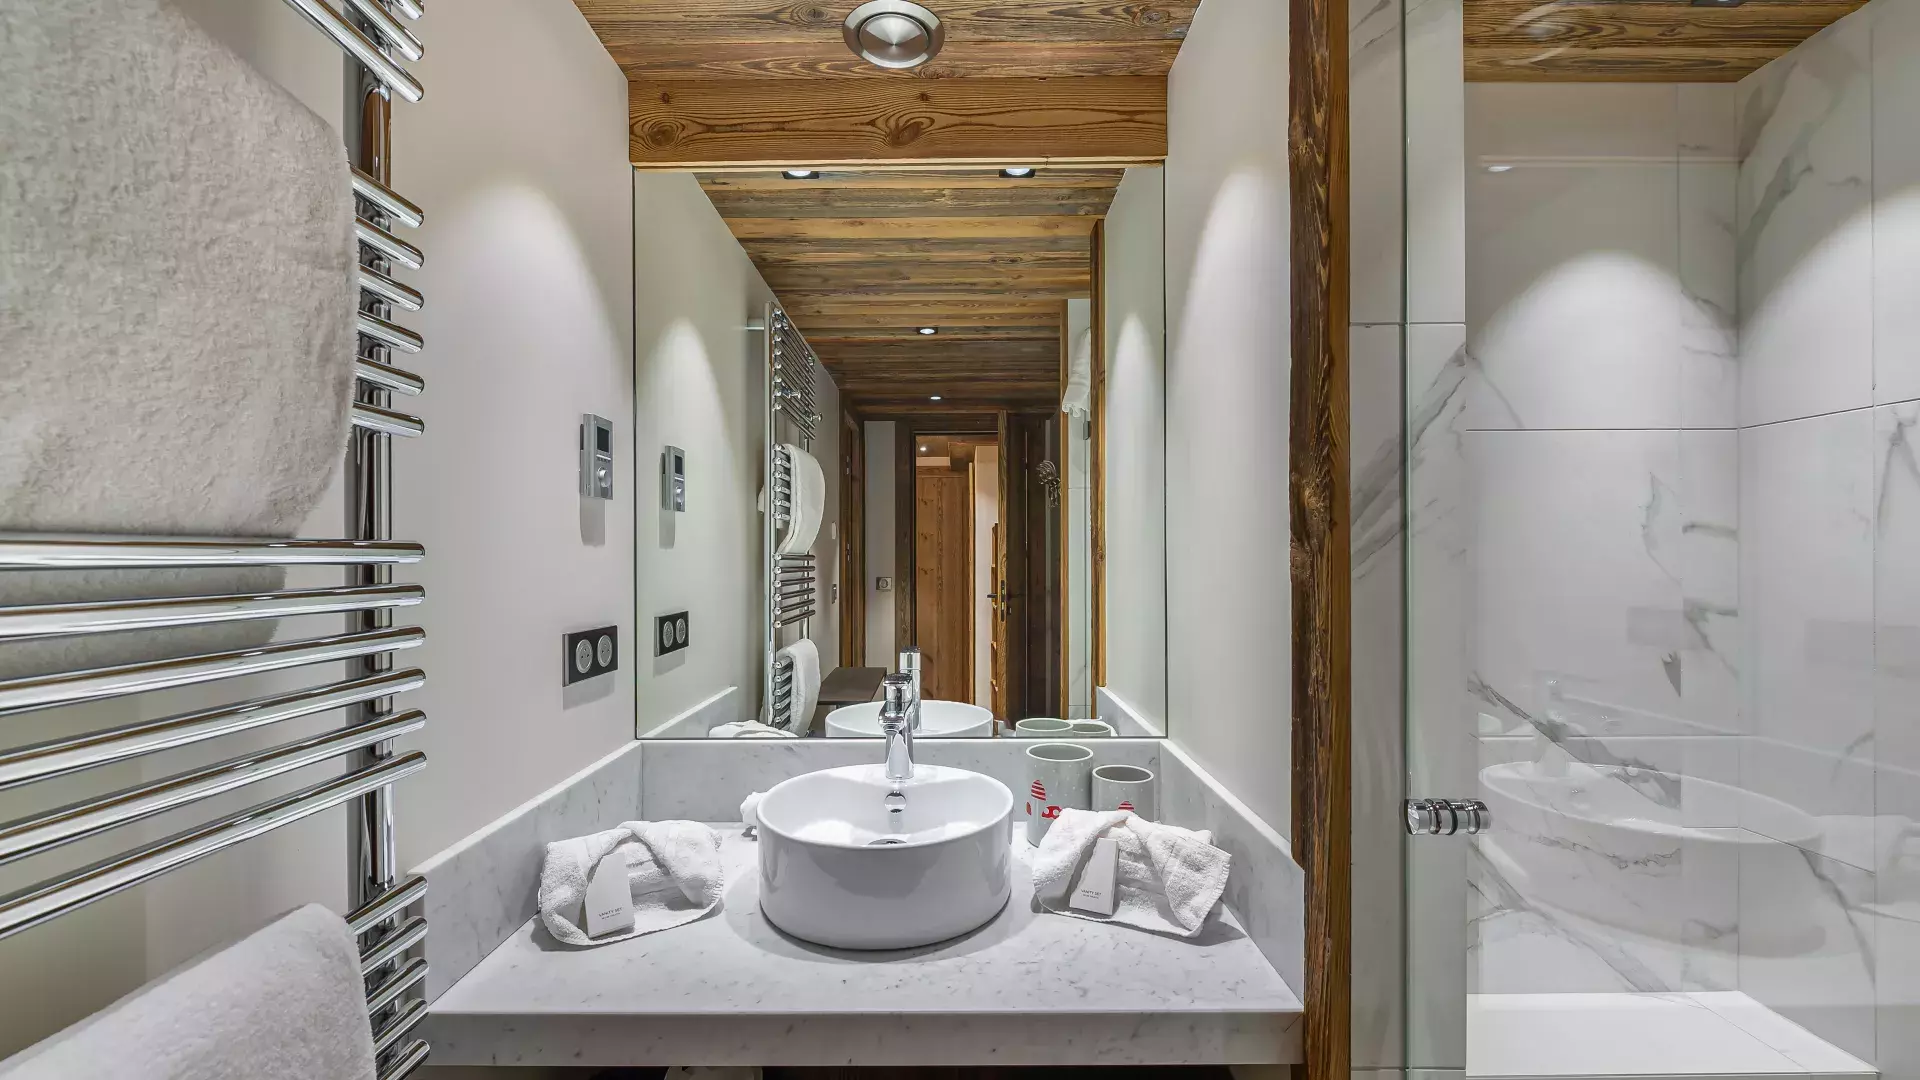 Appartement Sifflote 8 - Location chalets Covarel - Val d'Isère Alpes - France - Salle de bain 2